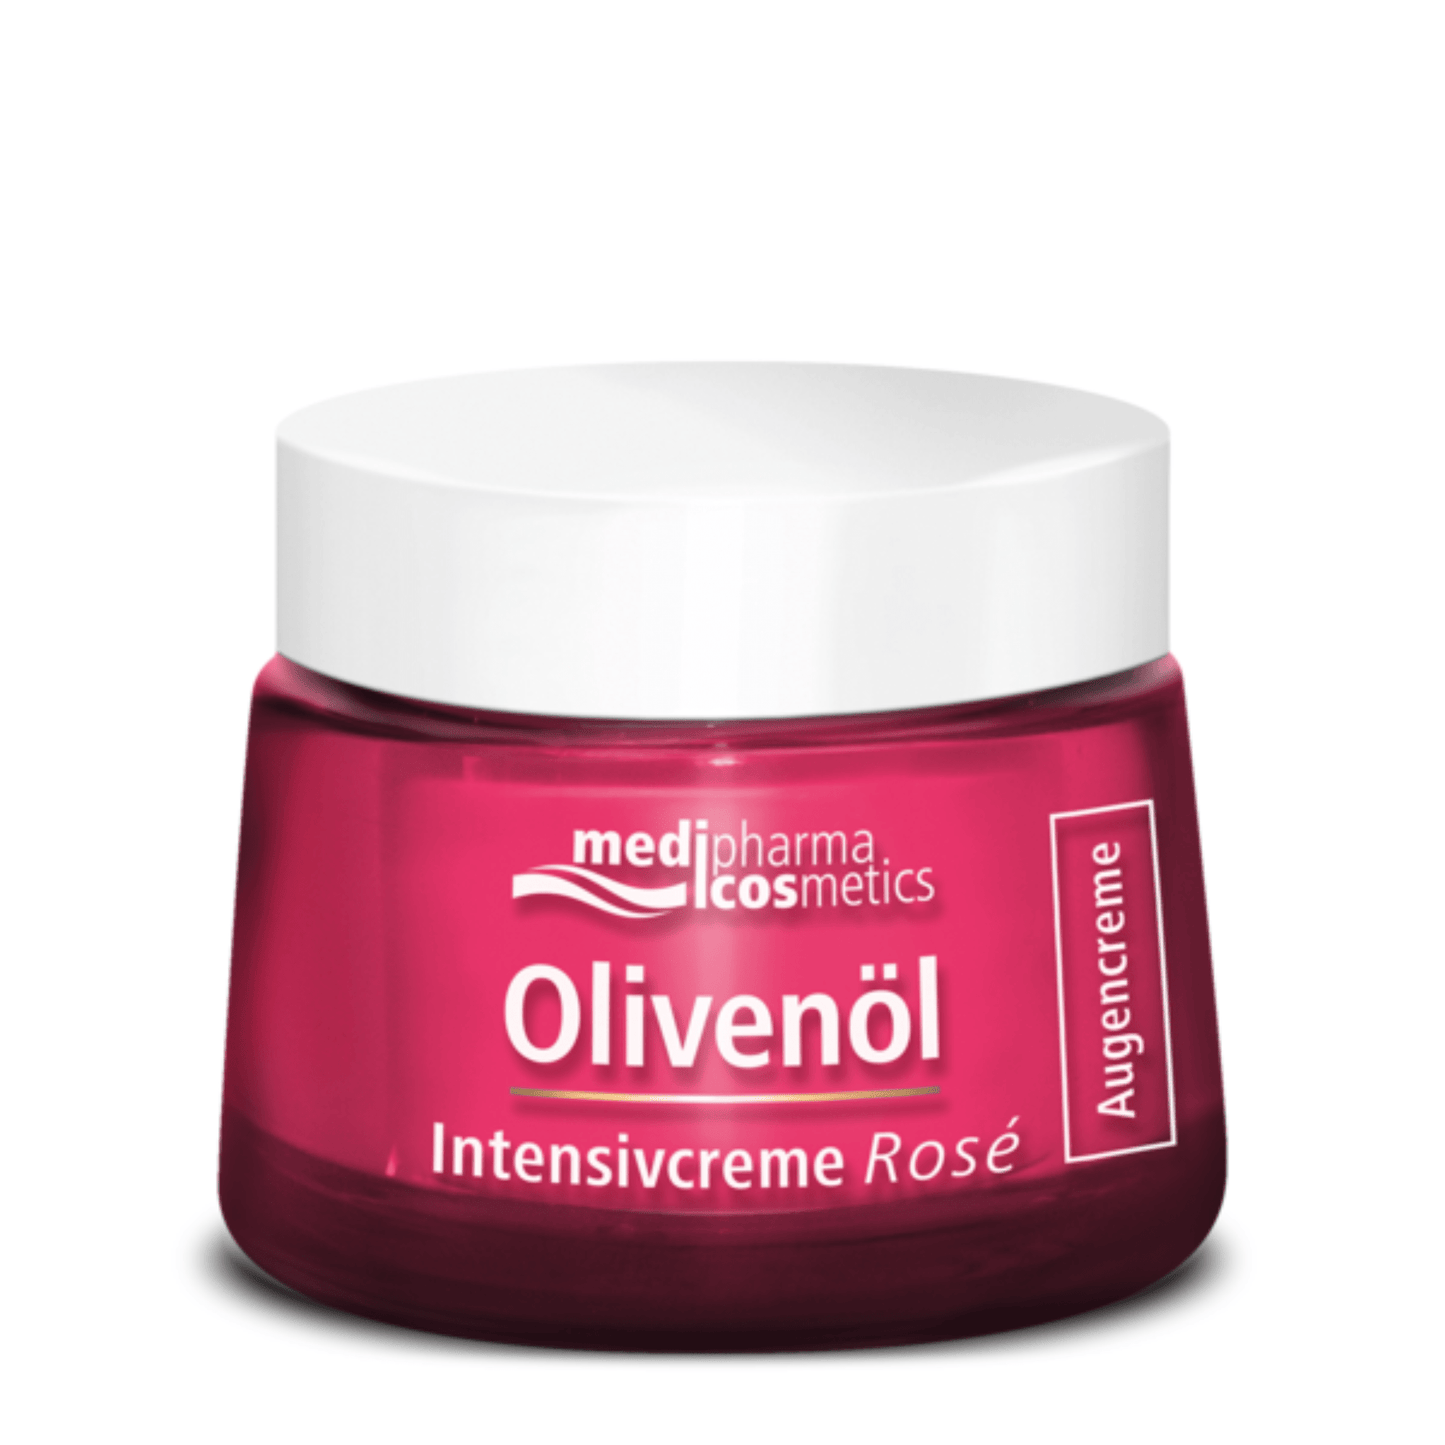 Primary Image of Olivenol Intensivcreme Rose Augencreme